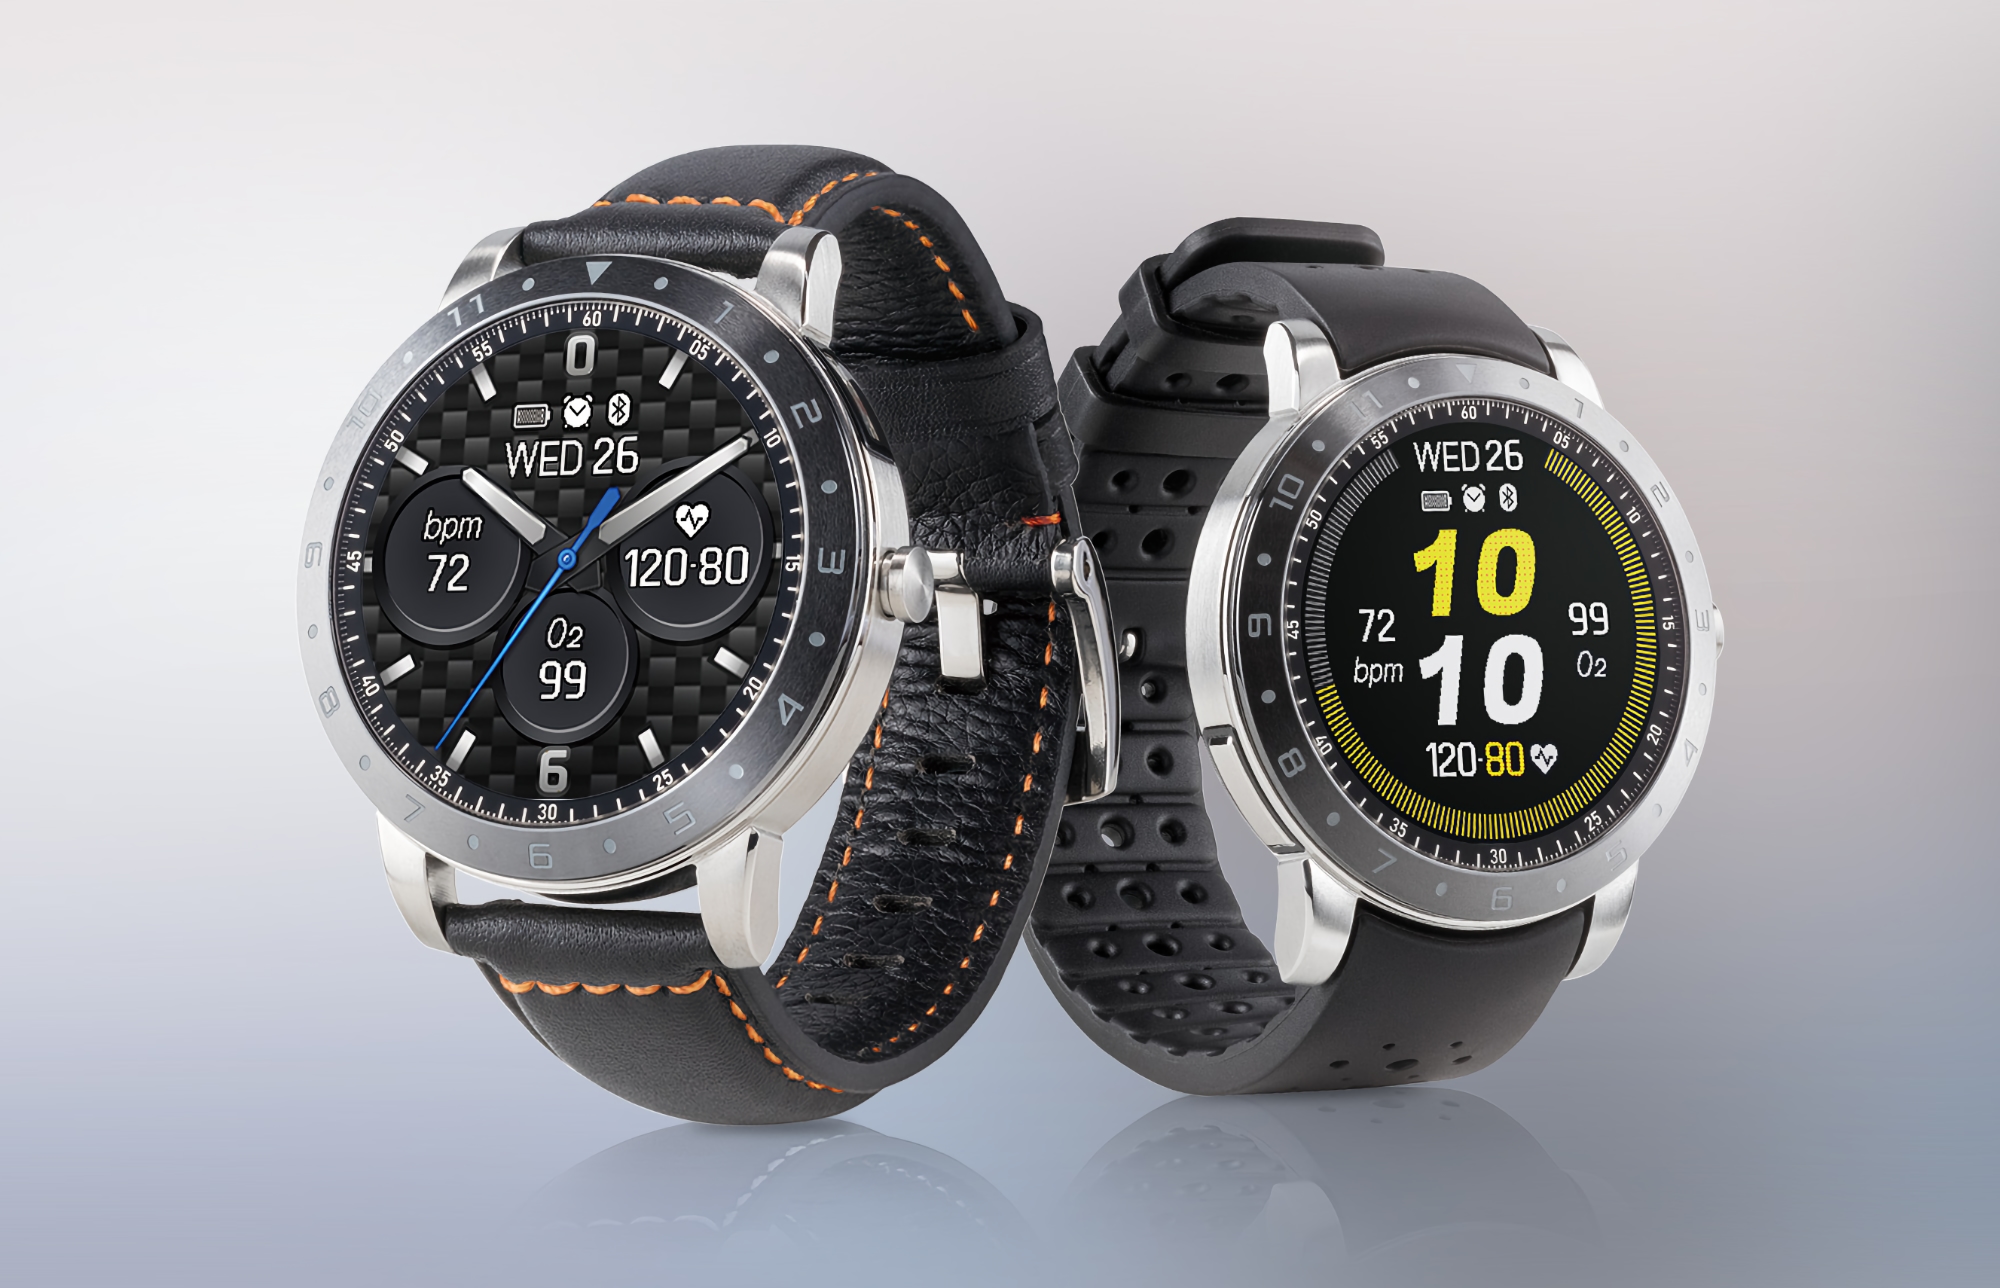 La smartwatch ASUS VivoWatch 5 apparaît sur le site web de la société : écran OLED, capteur SpO2, NFC et fonction de mesure de la température corporelle